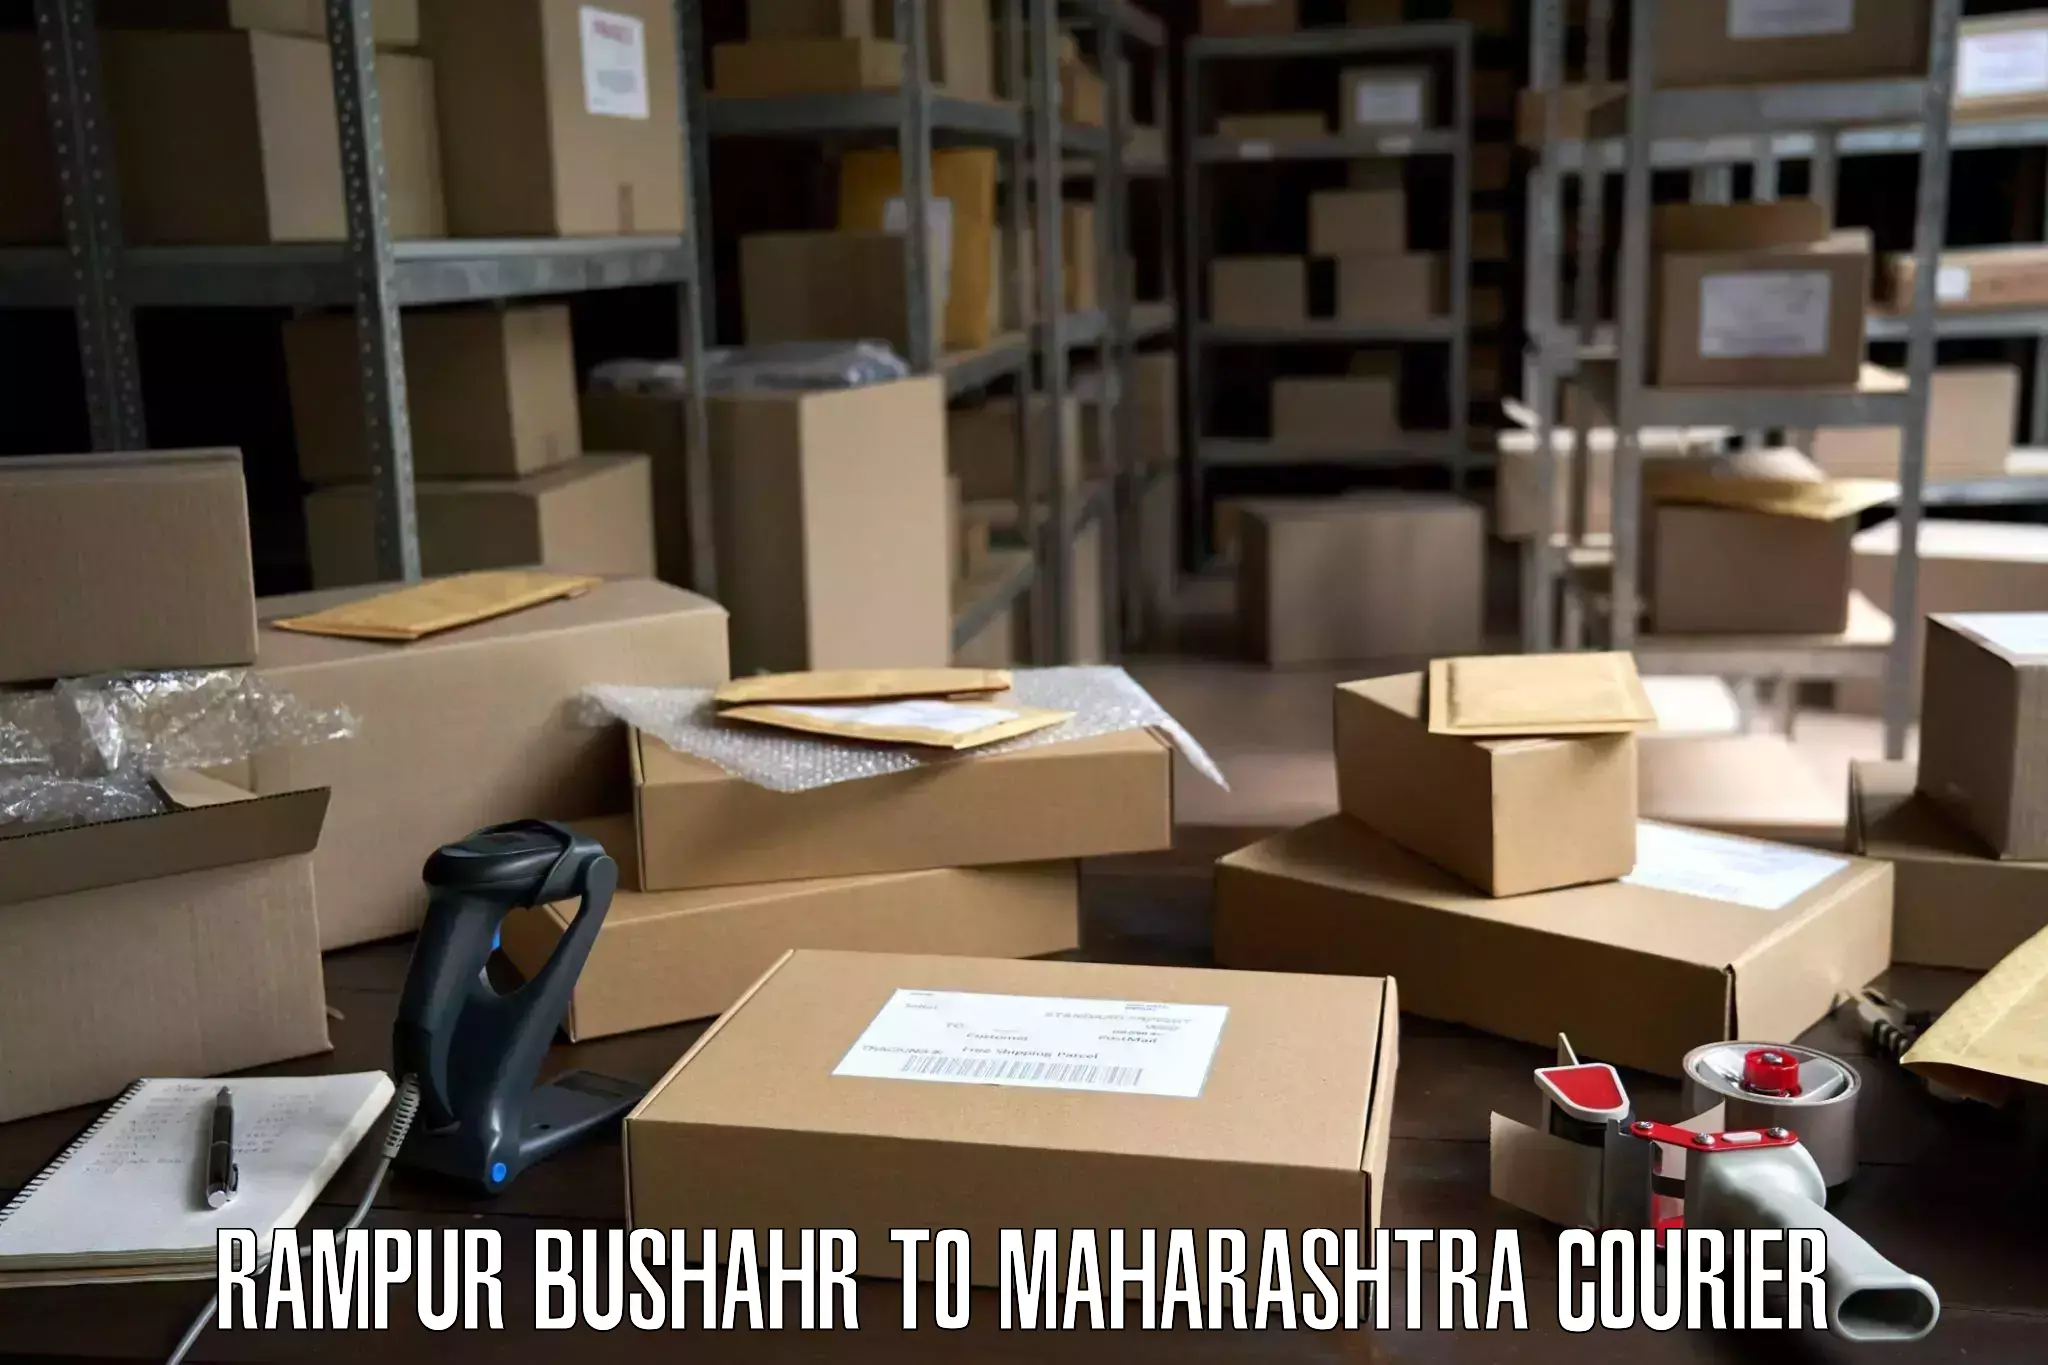 Quality moving company Rampur Bushahr to Solapur